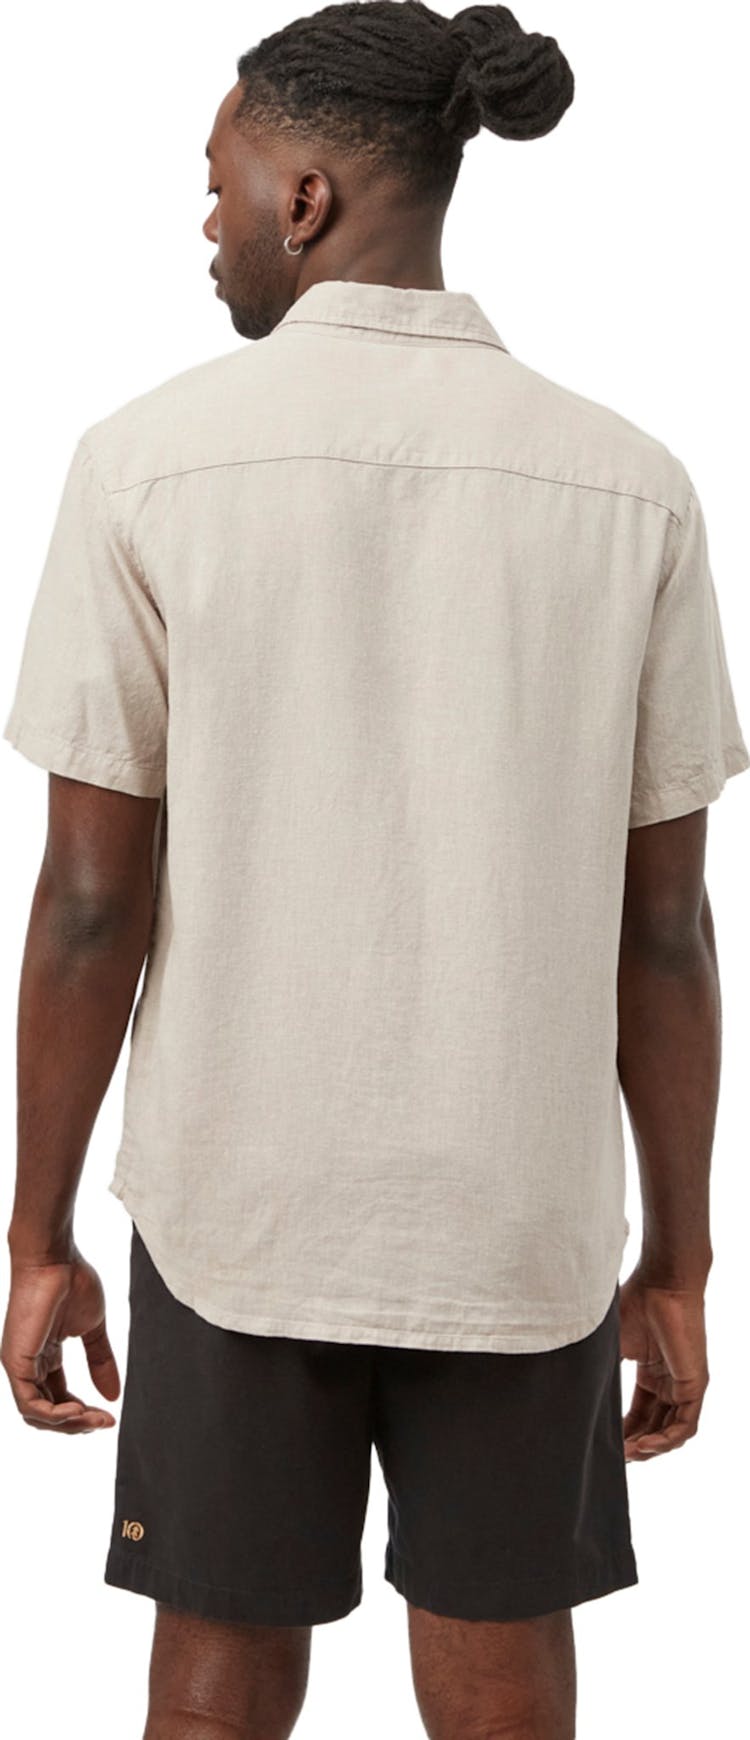 Numéro de l'image de la galerie de produits 2 pour le produit Chemise boutonnée à manches courtes en chanvre - Homme